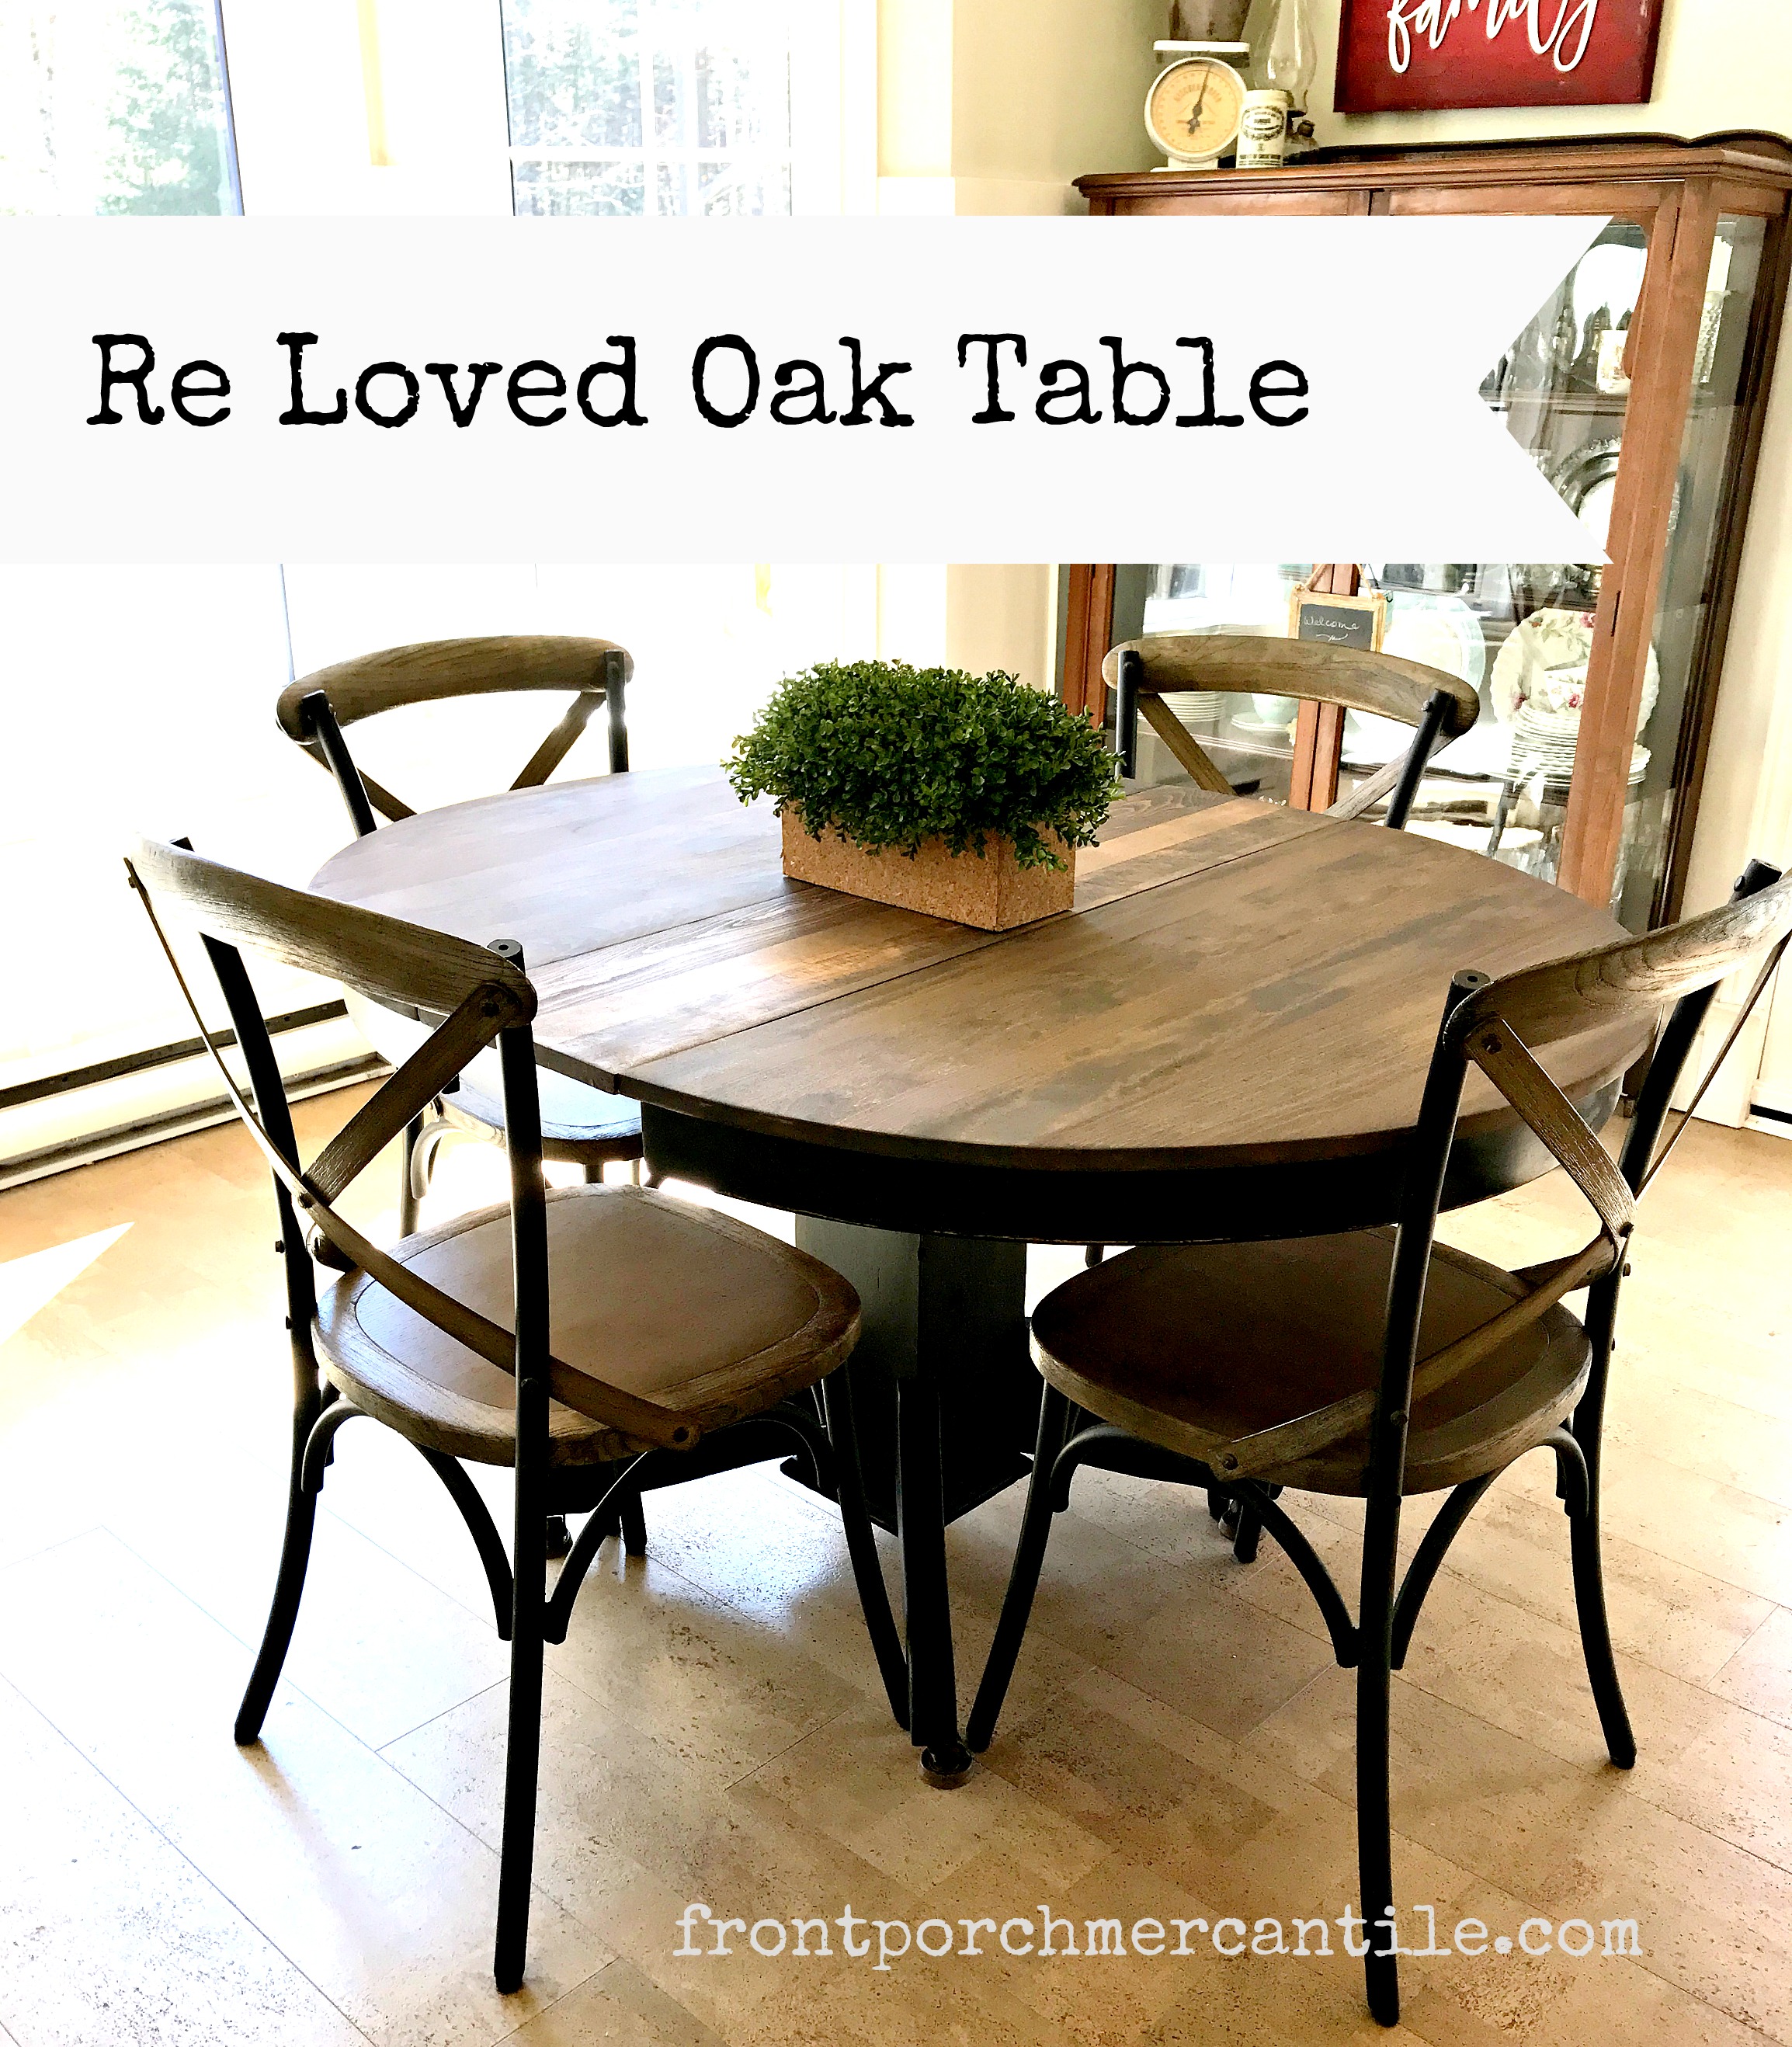 Re-Loved Oak Kitchen Table